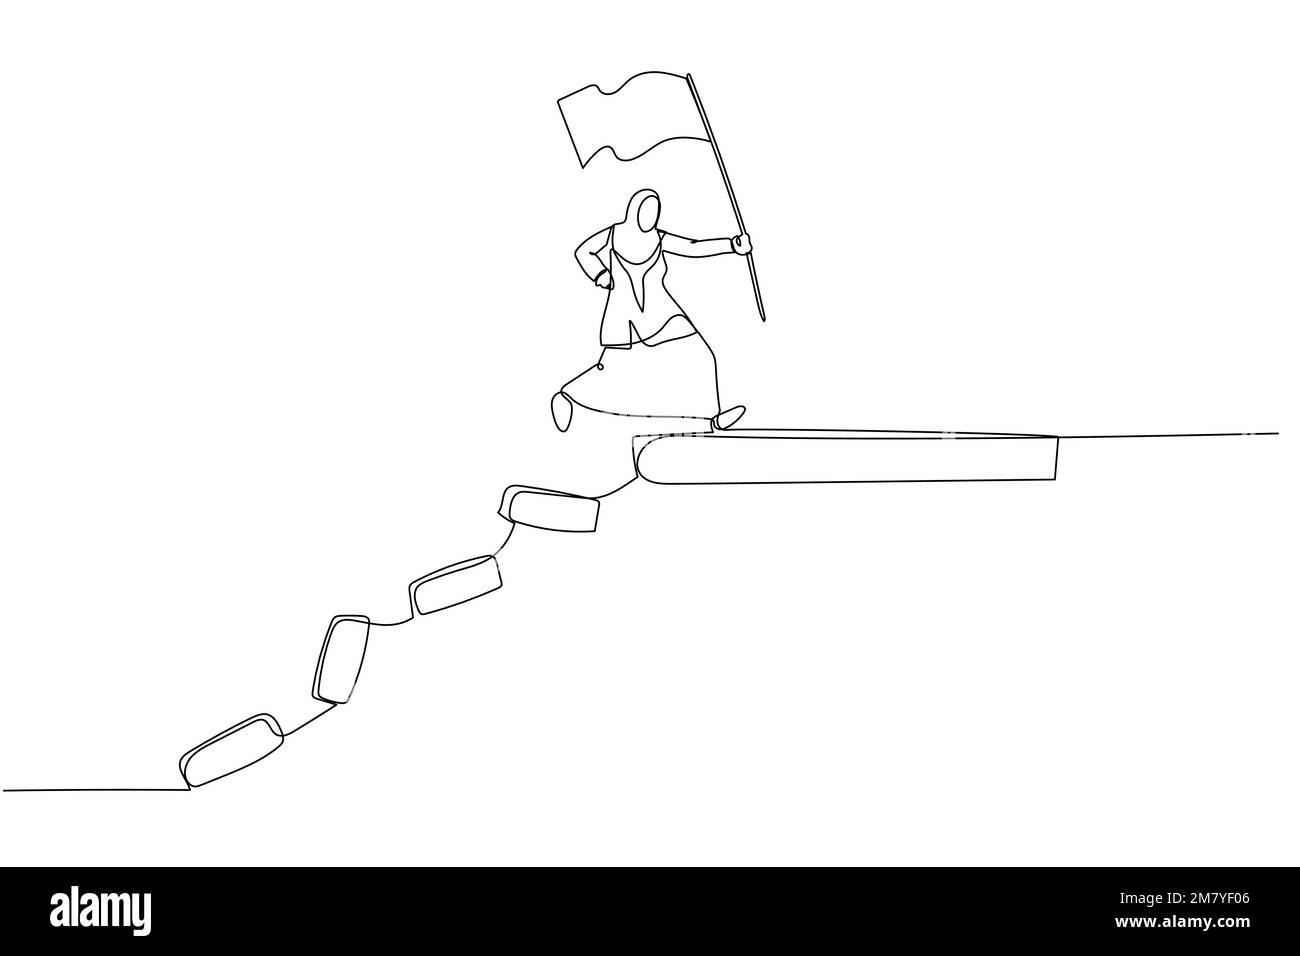 Zeichnung einer muslimischen Geschäftsfrau, die auf eine Kollapsbrücke springt, um das Zielkonzept des Überlebens zu erreichen. Einzeiliges Kunstdesign Stock Vektor